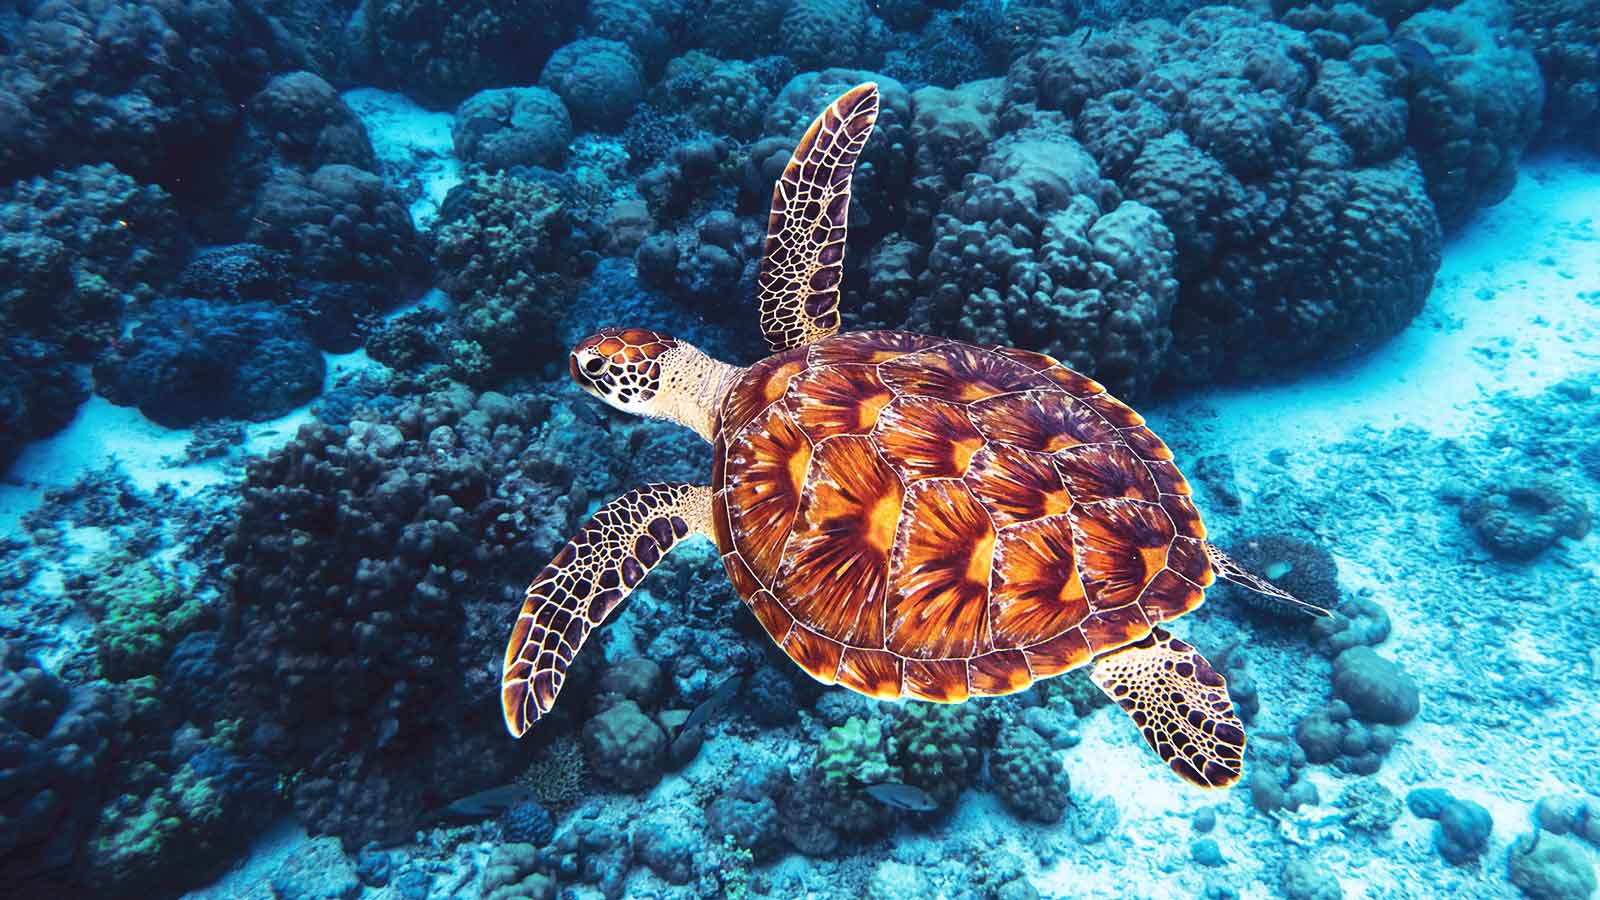 Động vật biển cũng cần oxy để sống. Chúng duy trì sự tồn tại bằng oxy hòa tan